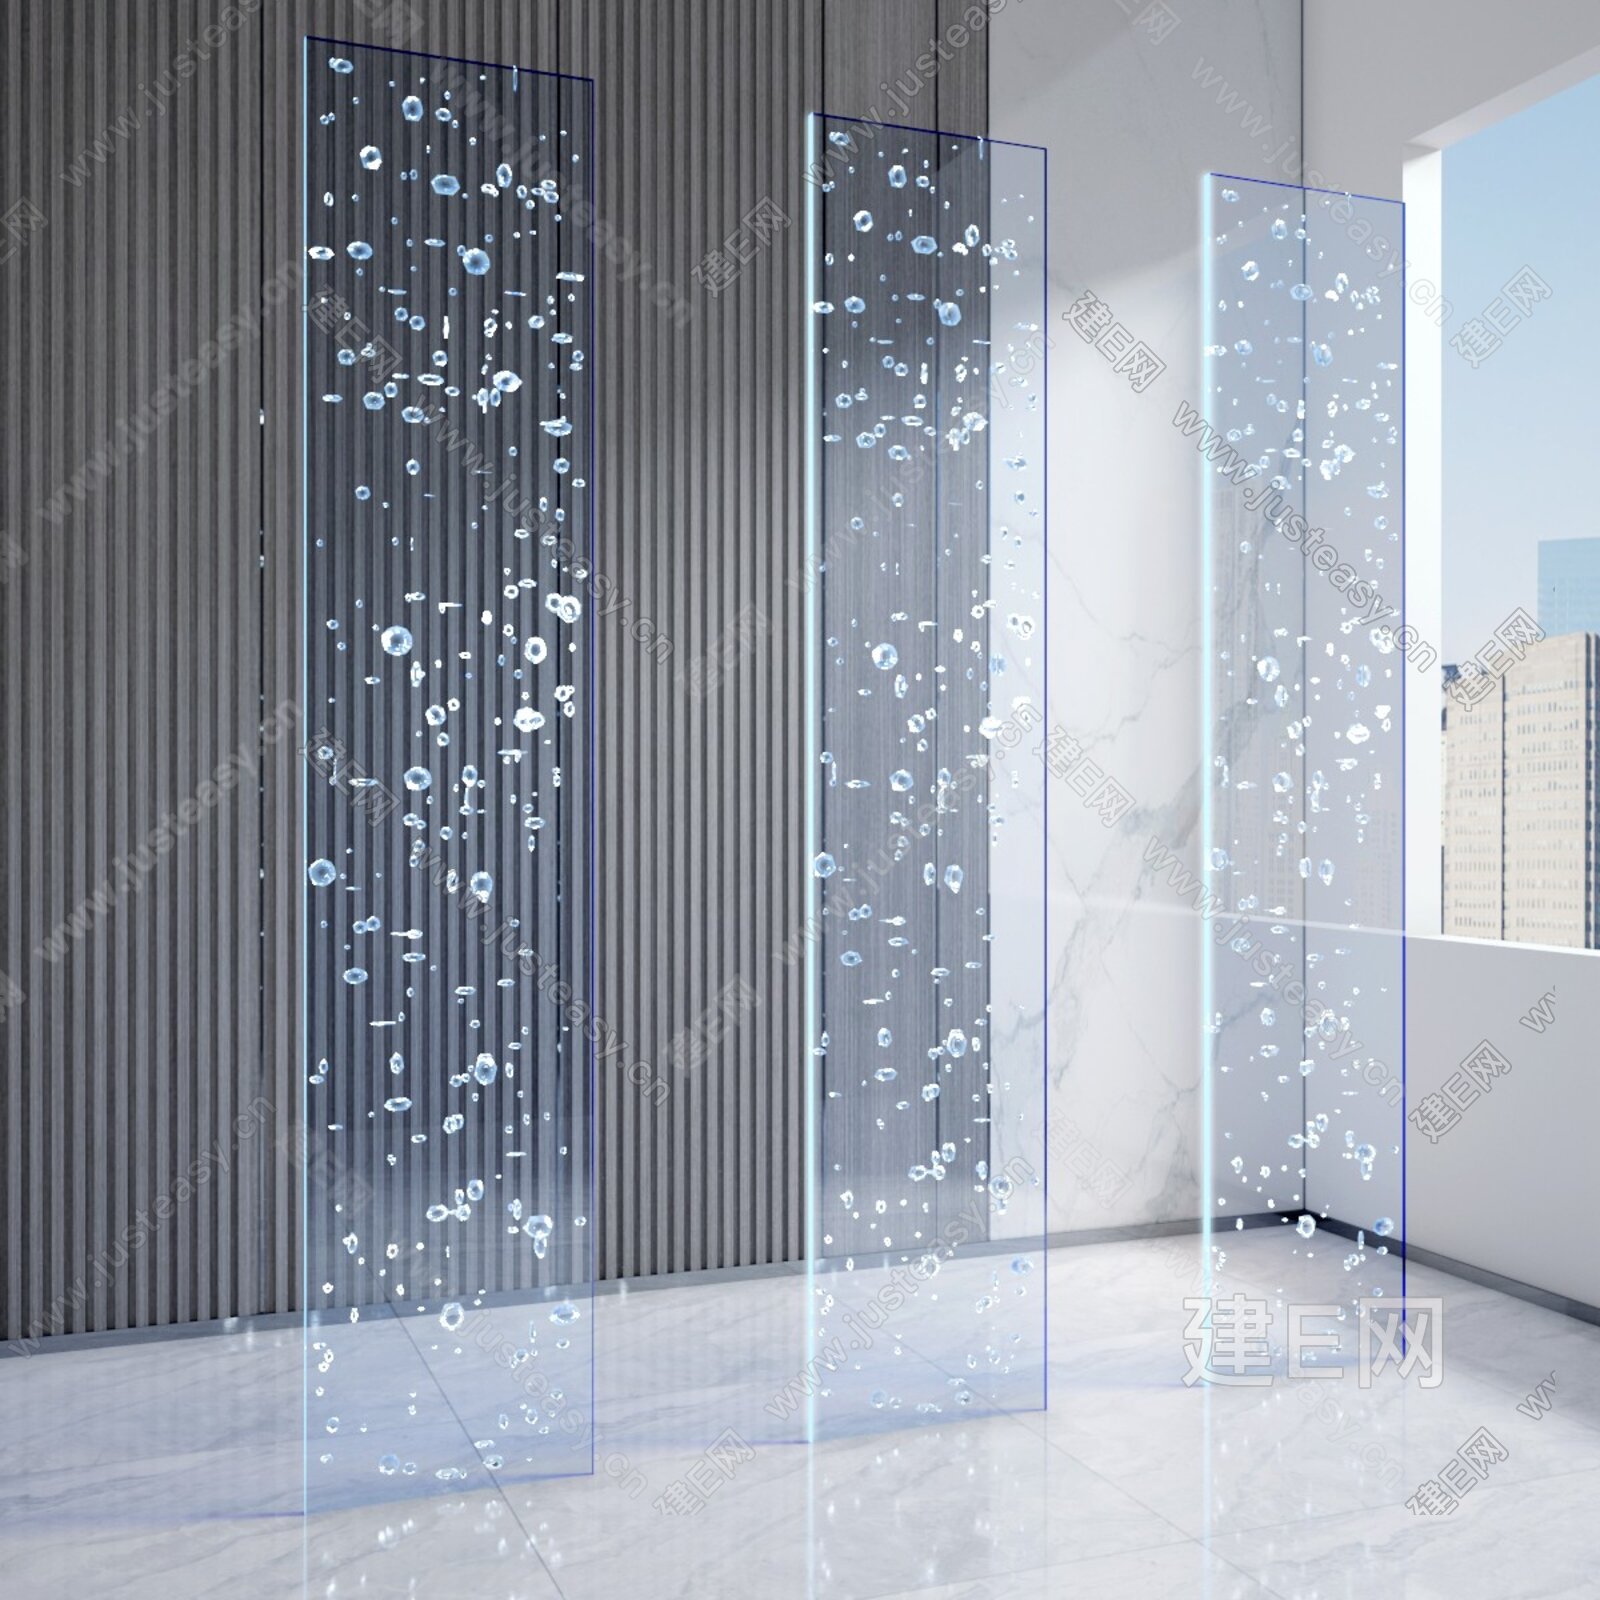 家装艺术玻璃隔断墙-图片-设计图-效果图-平面图-玻璃图库-中国玻璃网